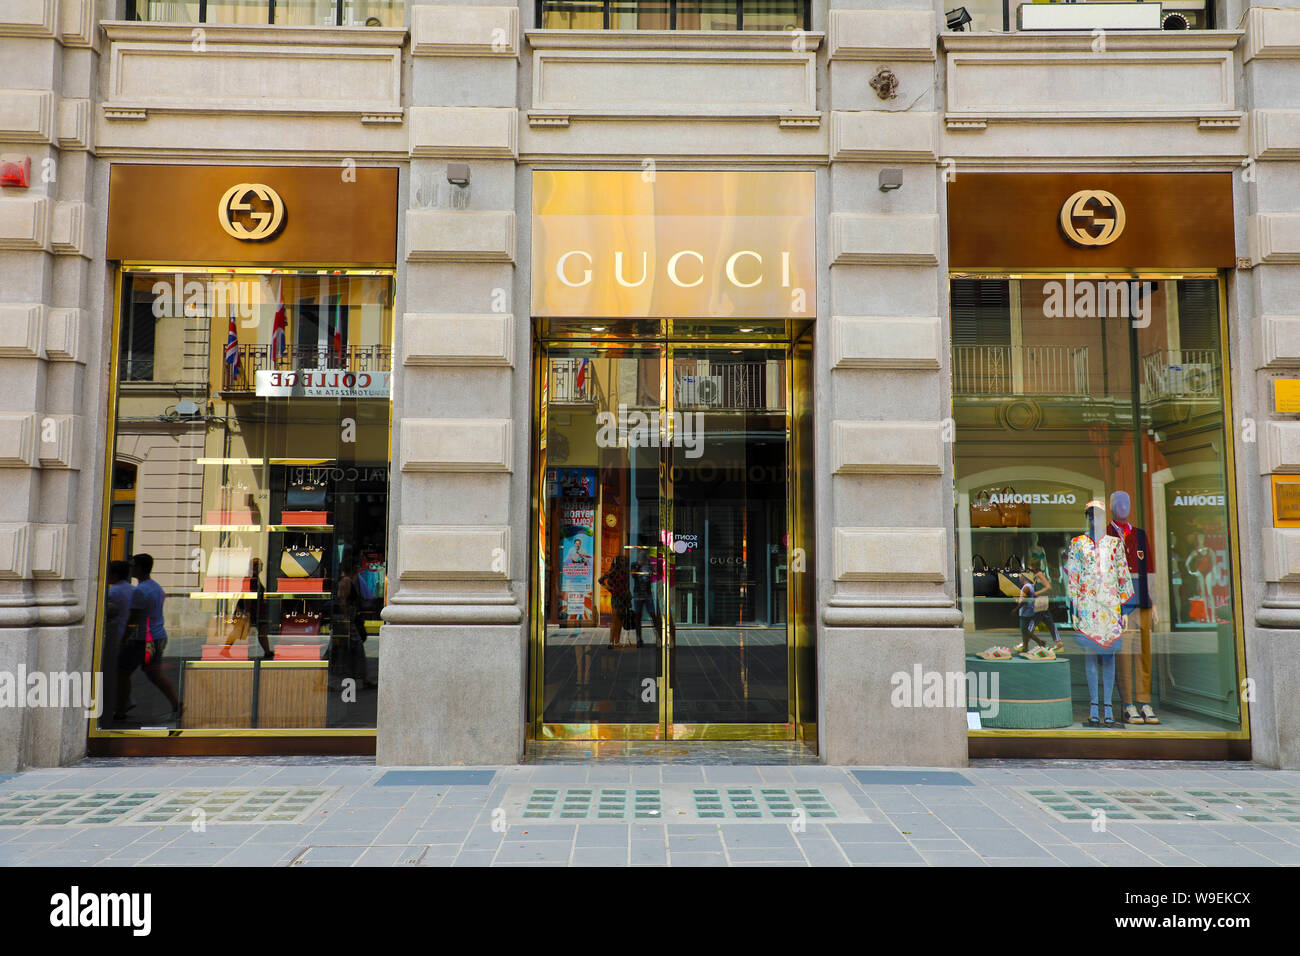 BARI, ITALIE - 30 juillet 2019 : boutique Gucci. Gucci est une marque de luxe italienne de la mode et maroquinerie, fondée par Guccio Gucci à Florence en 192 Banque D'Images